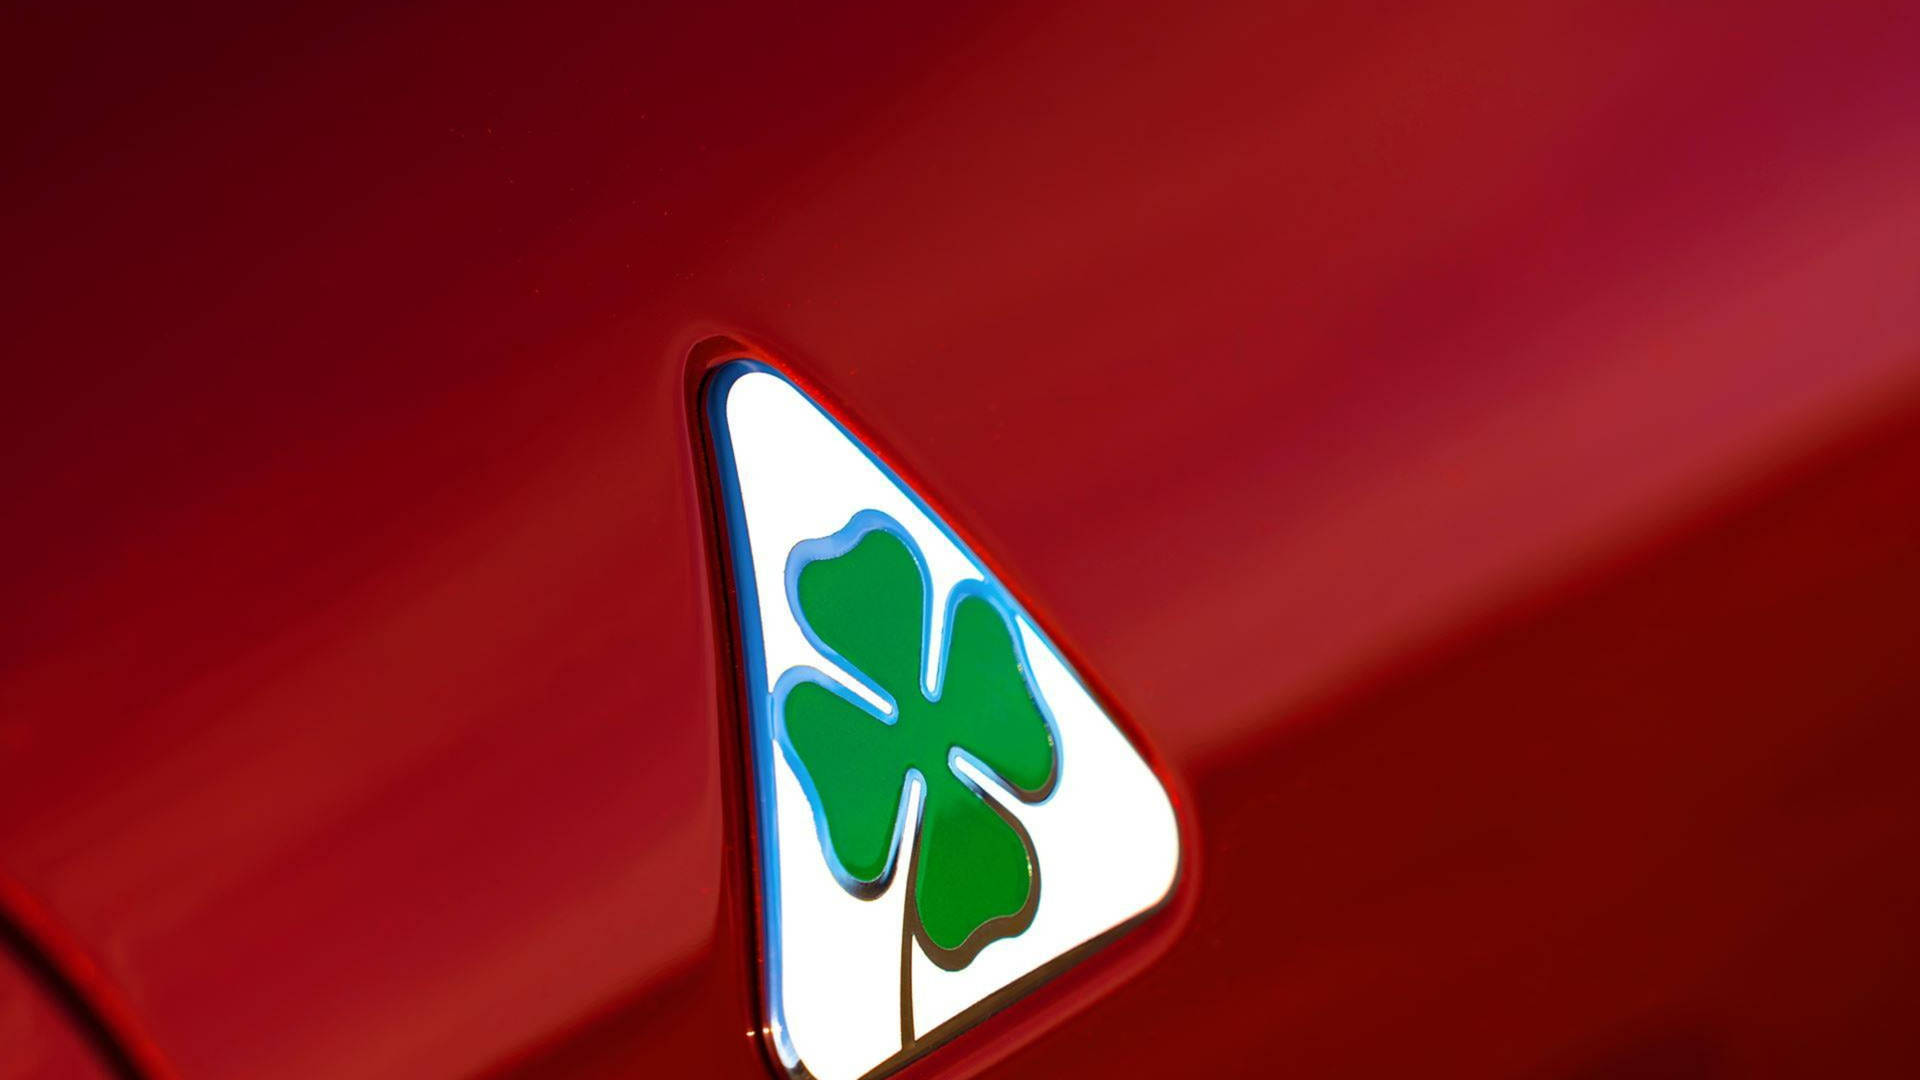 Alfa Romeo Quadrifoglio Symbol Background